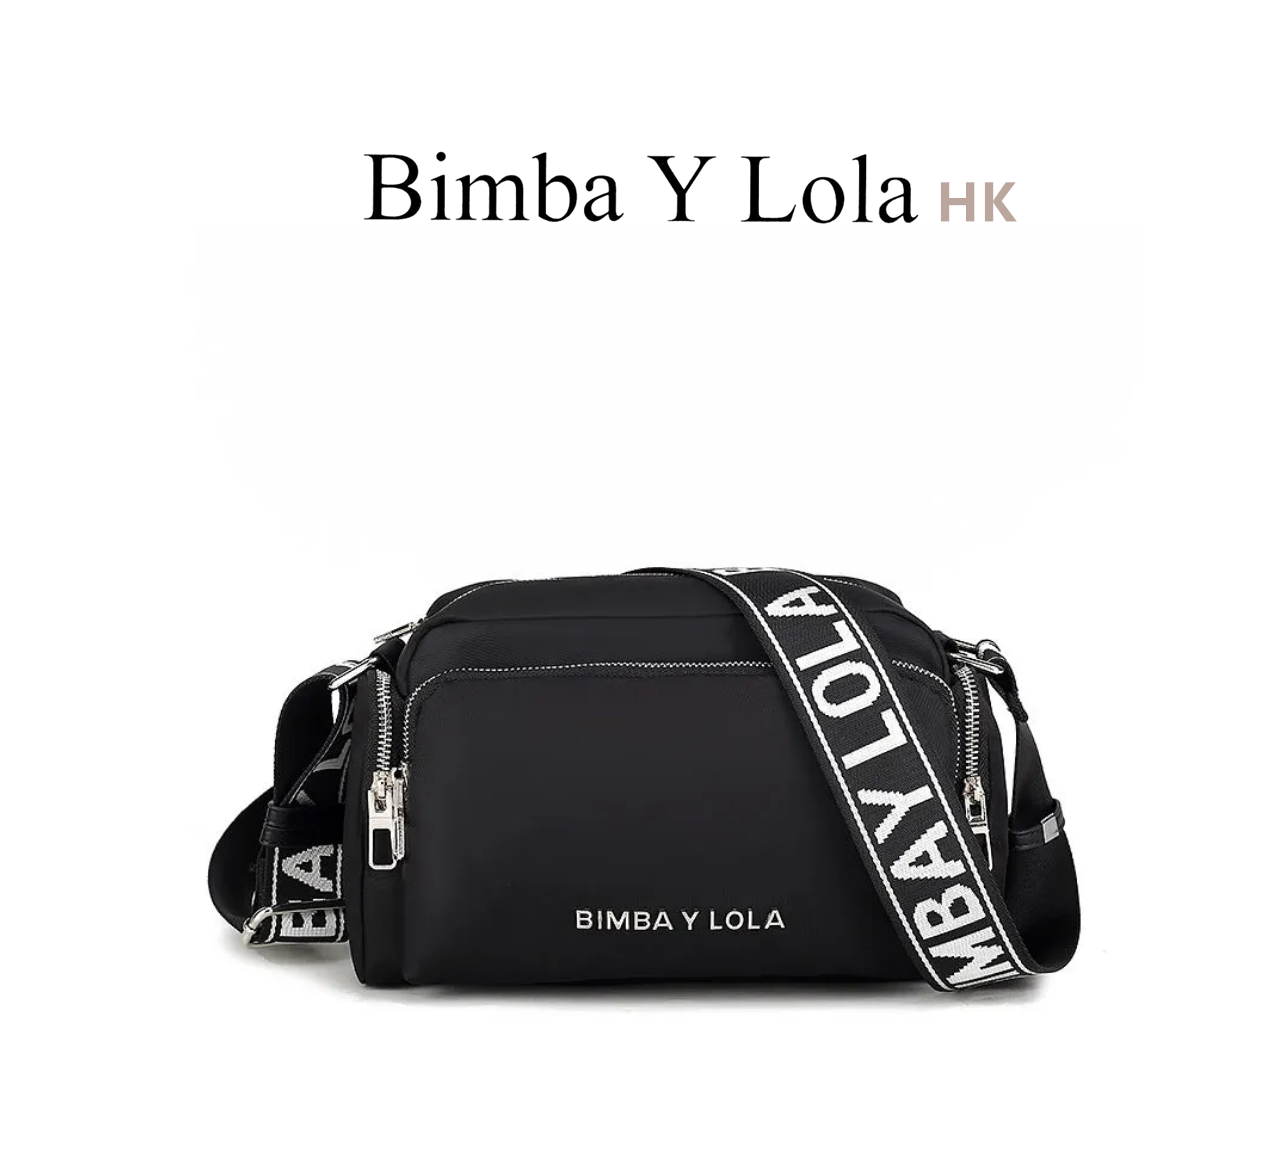 Nylon : Bold Creativity - Bimba Y Lola Ireland, Bimba y Lola trainers draw  inspiration from various artistic influences and vibrant colors and Bimba Y Lola  crossbody bag.